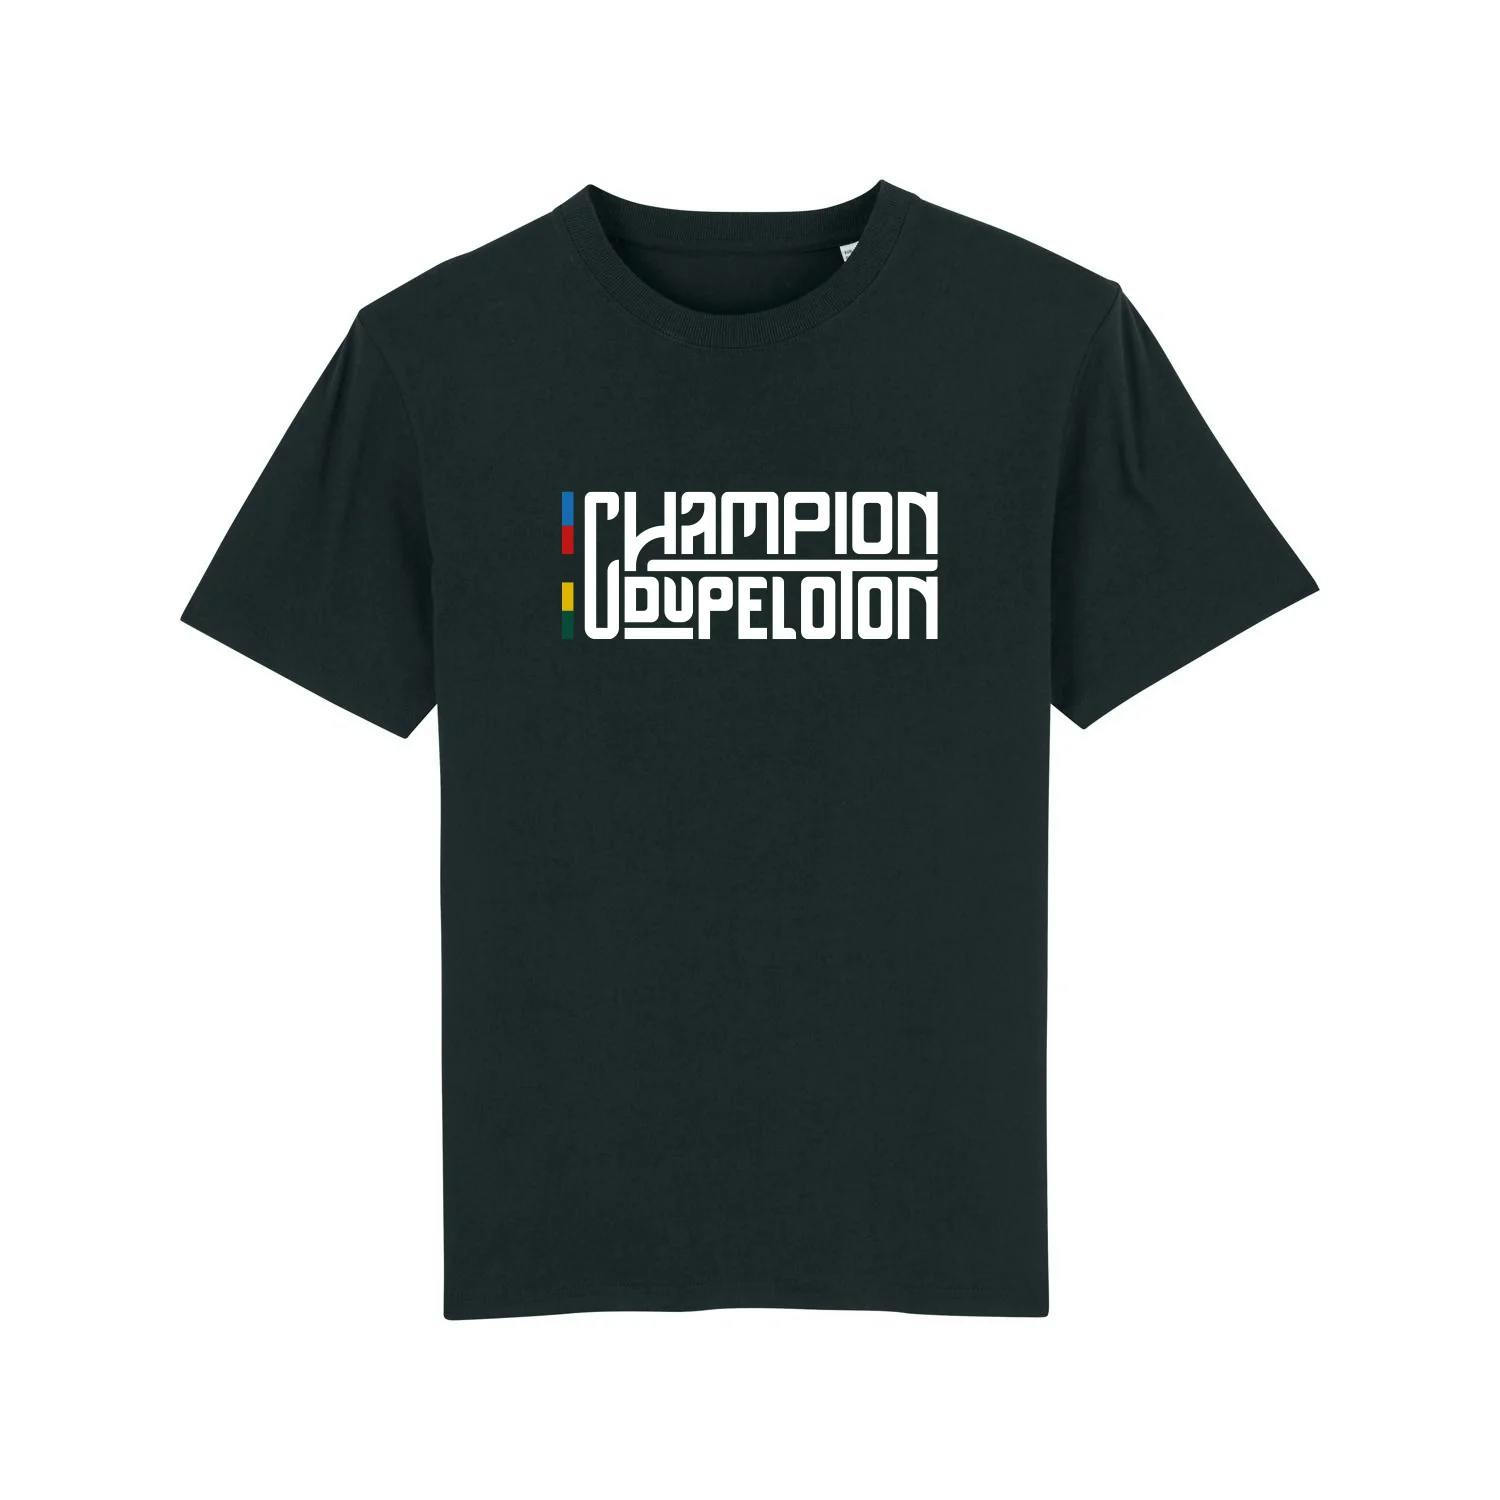 Champion du Peloton Cycling T-shirt - Black